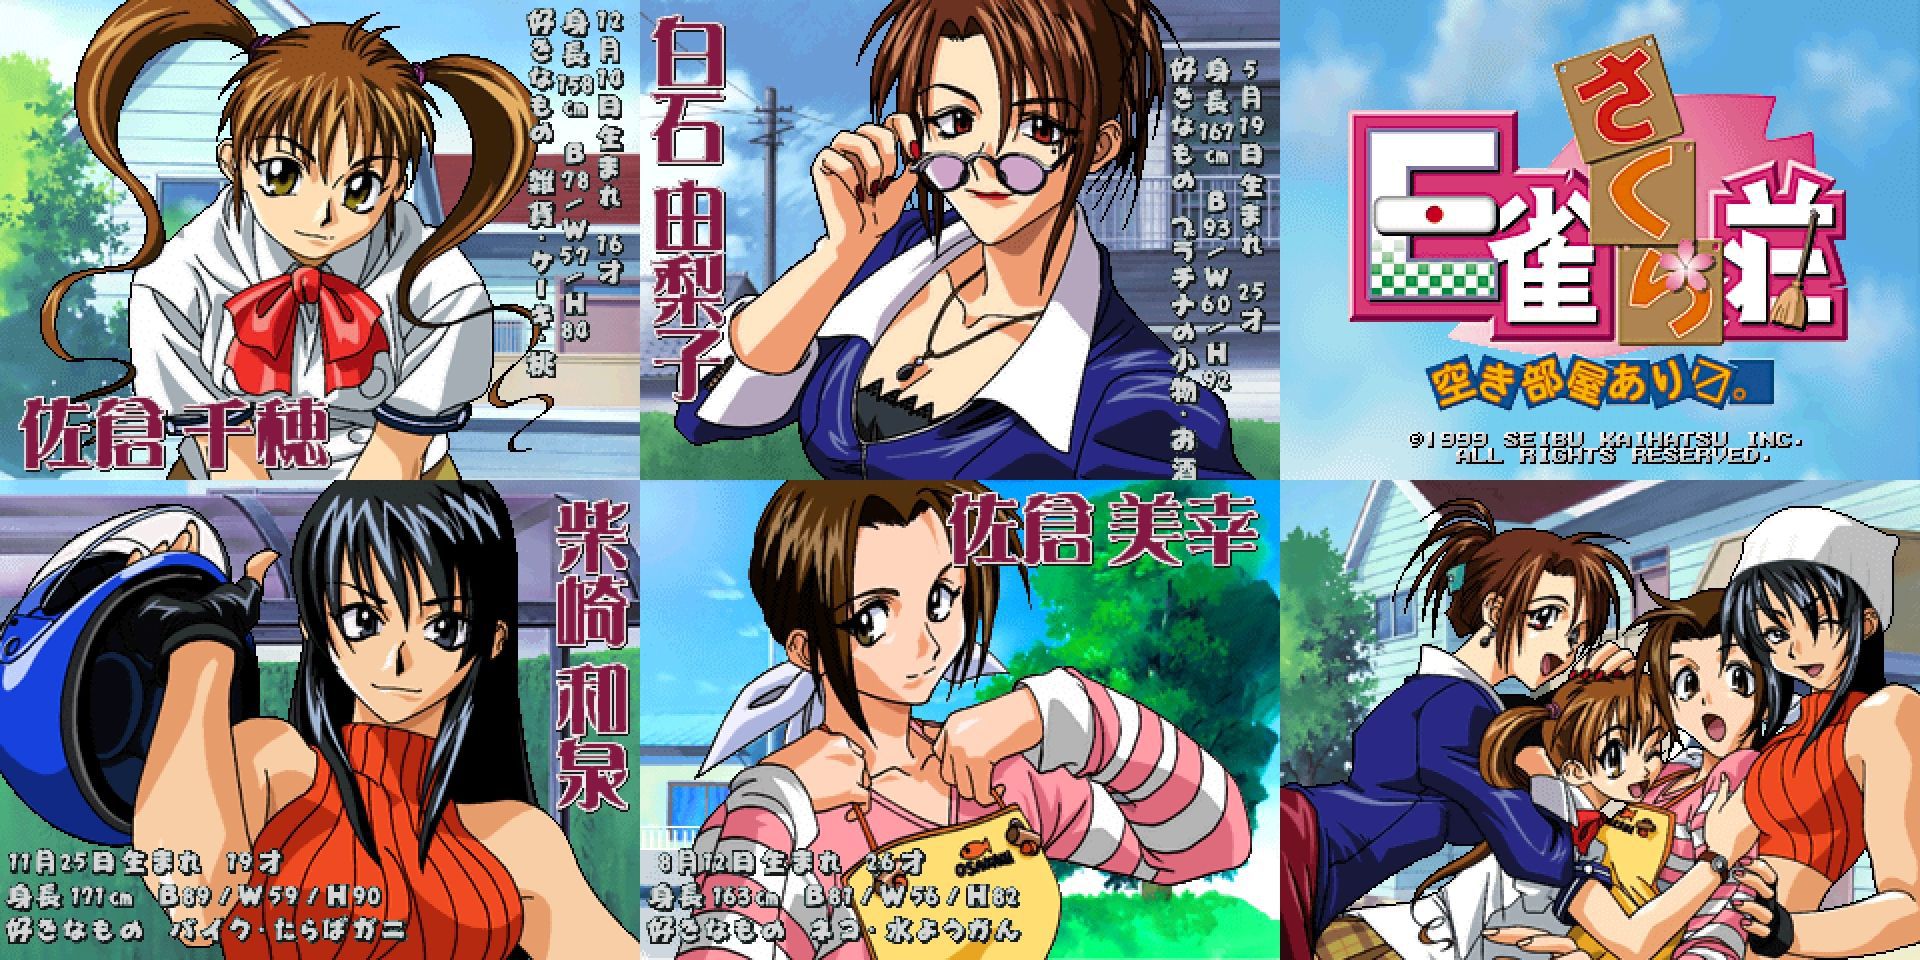 [2 next] crush Mahjong Paradise or Super real mahjong or undressing Mahjong game erotic Cute 38